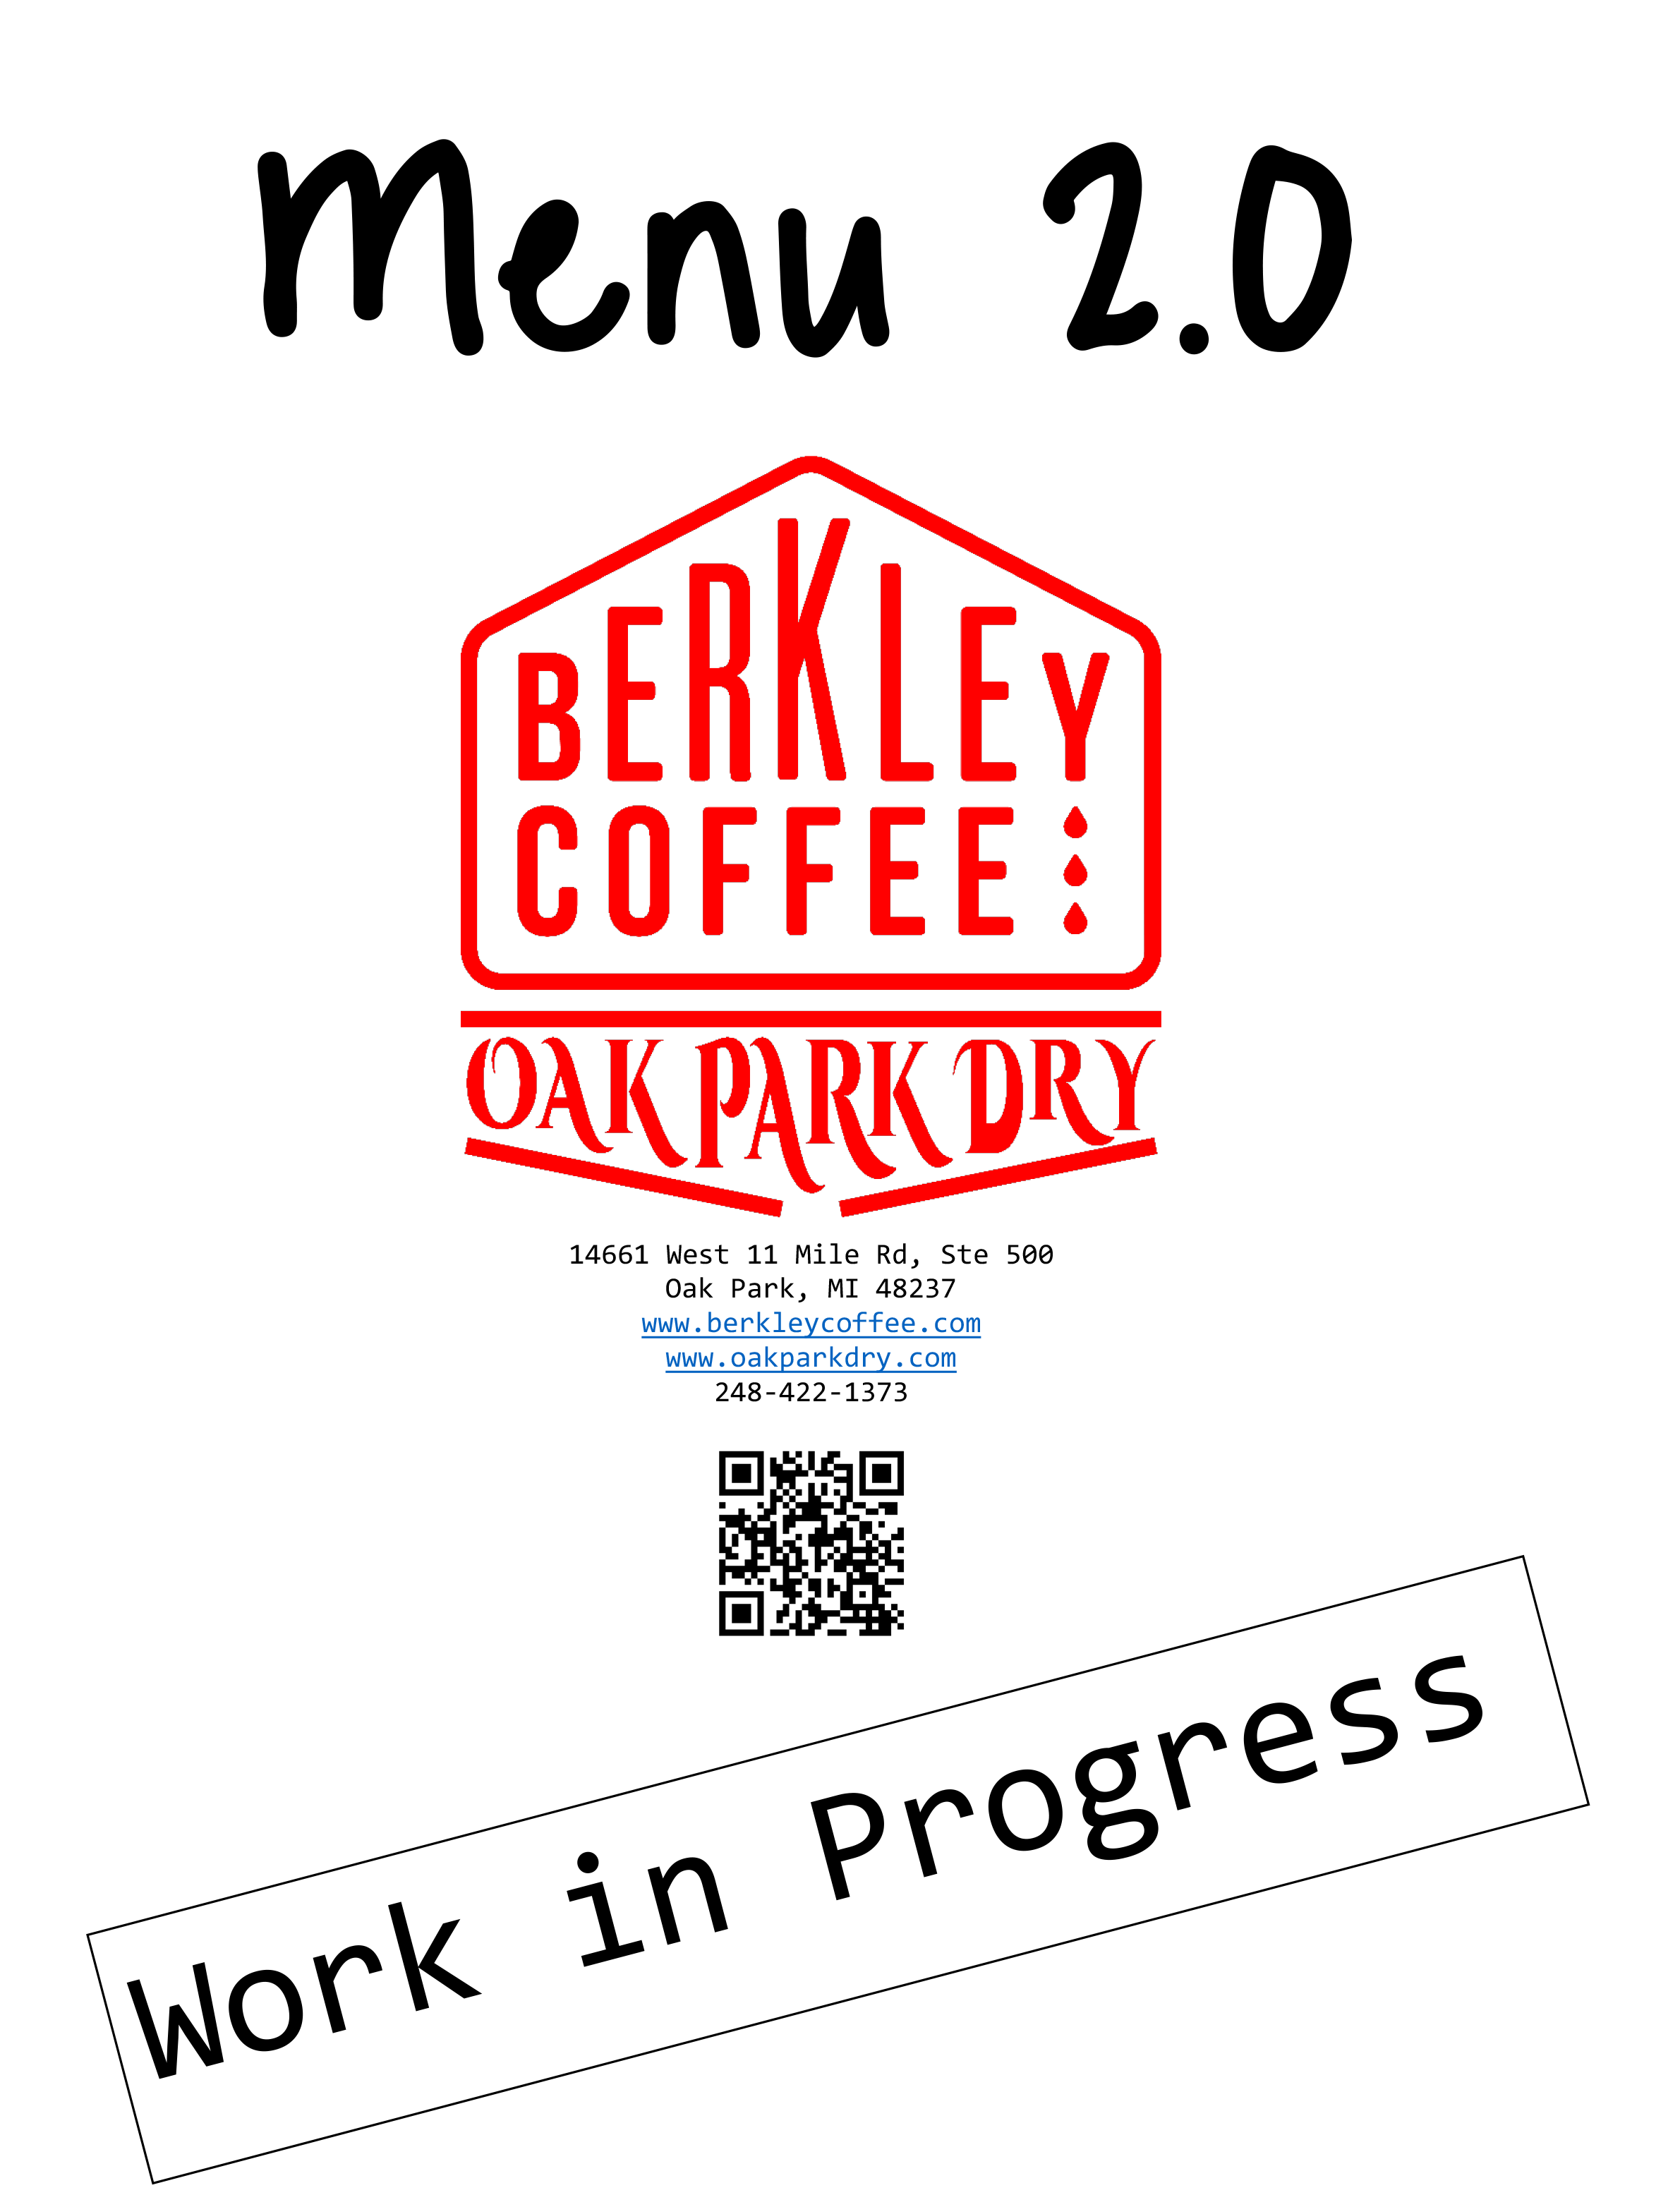 Berkley Coffee & Oak Park Dry